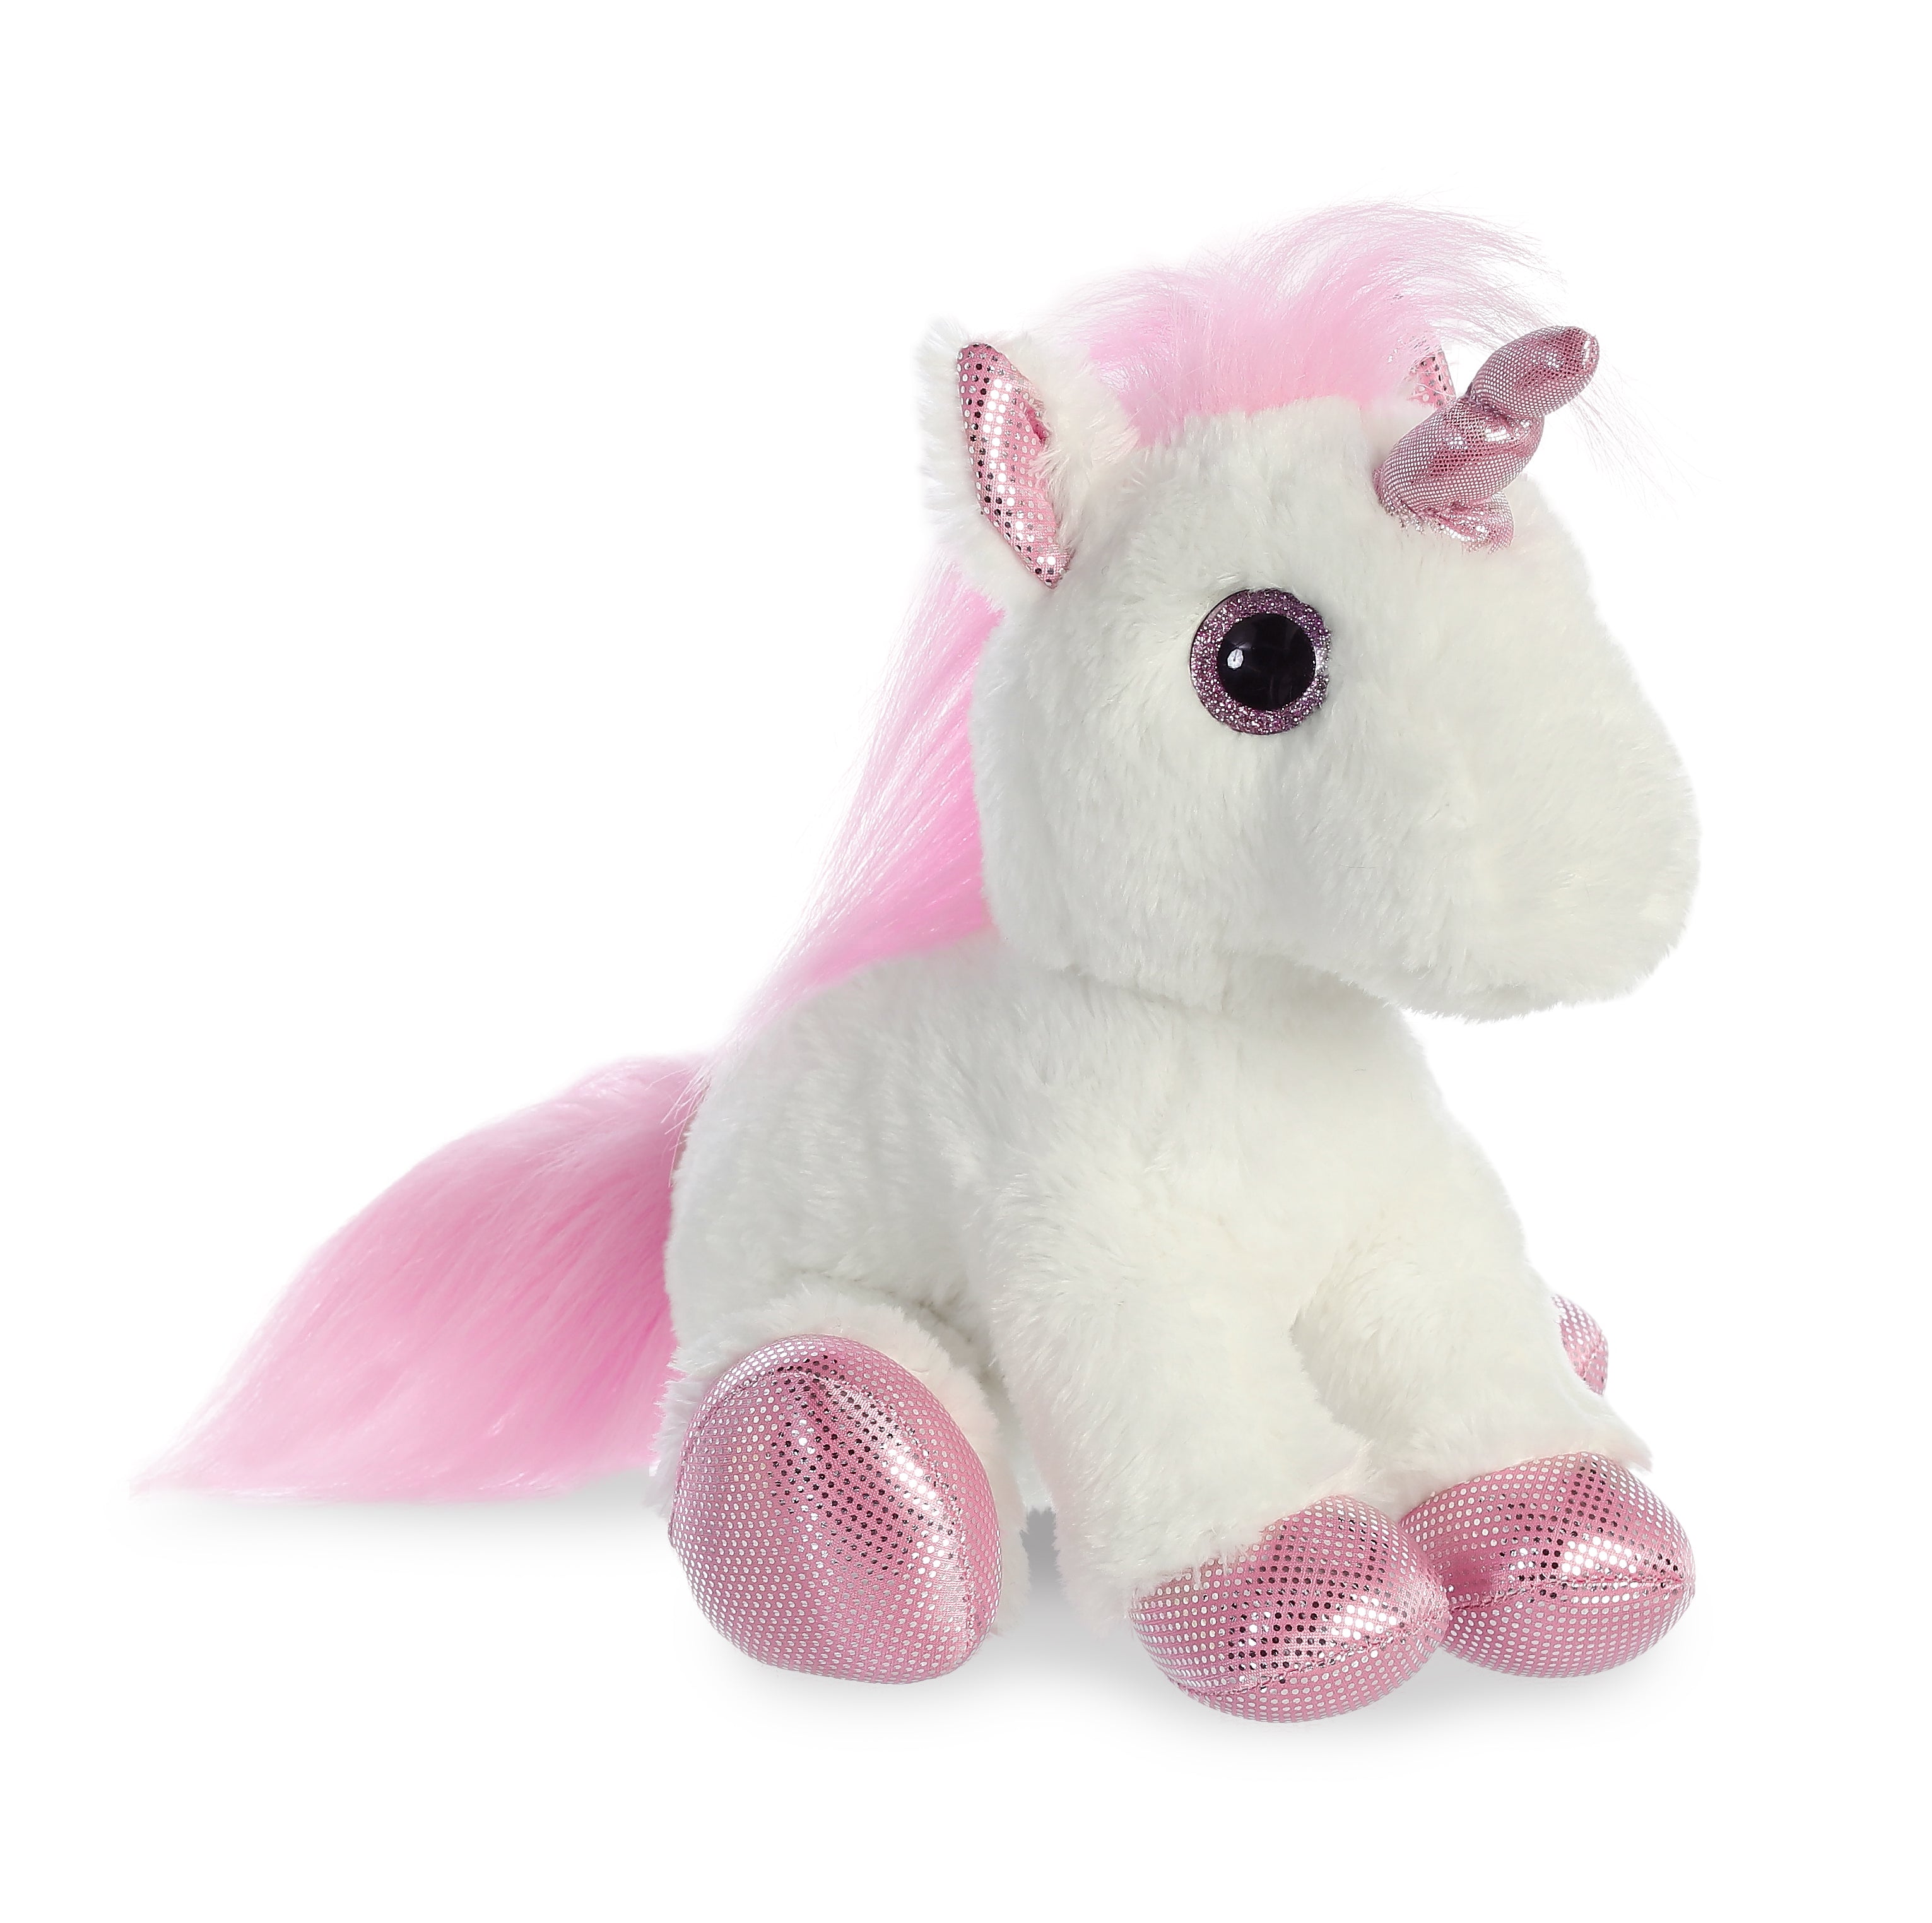  Itsy Unicorn Stuffed Animal Gift Box - Pink Unicorn